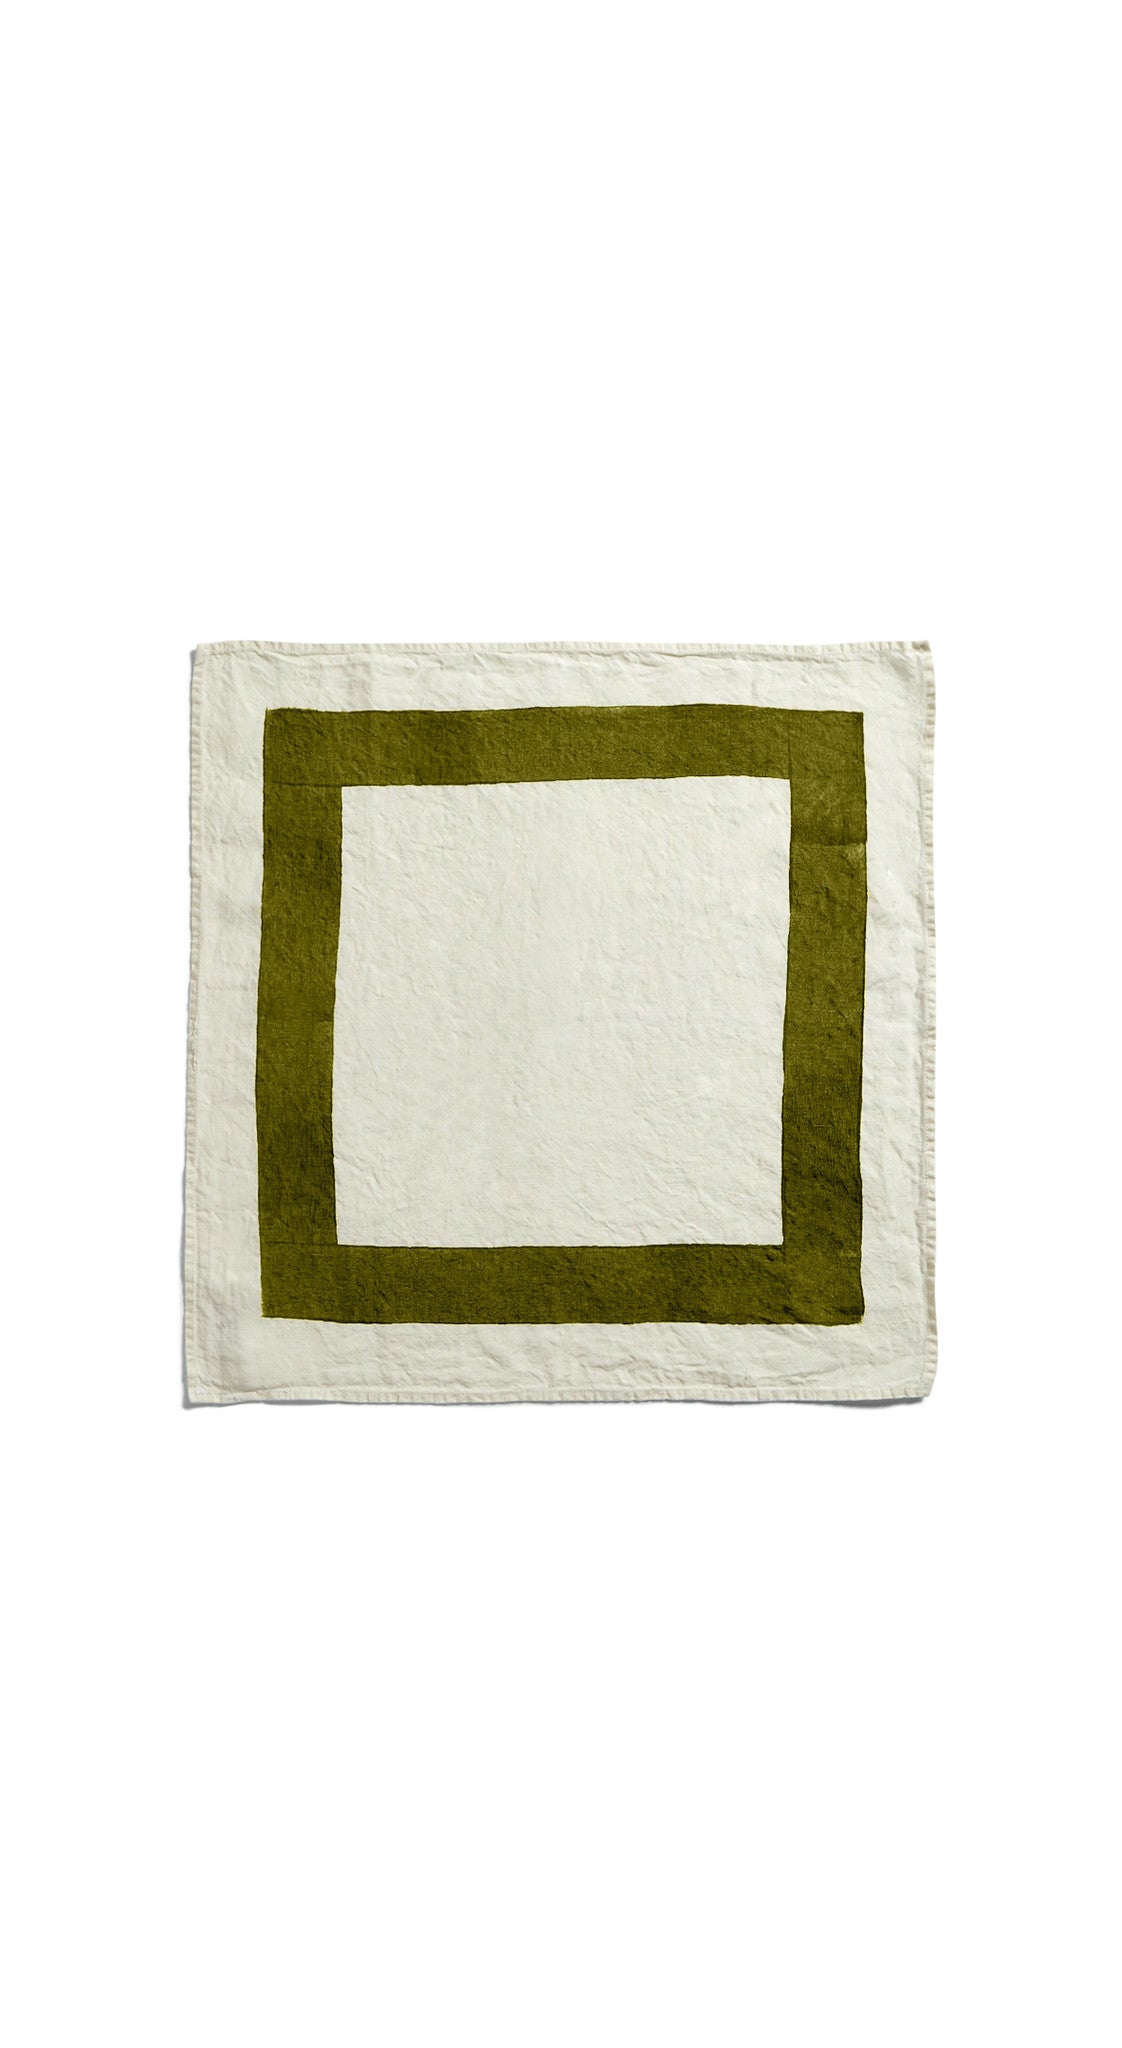 Cornice Linen Napkin in Avocado Green, 50x50cm